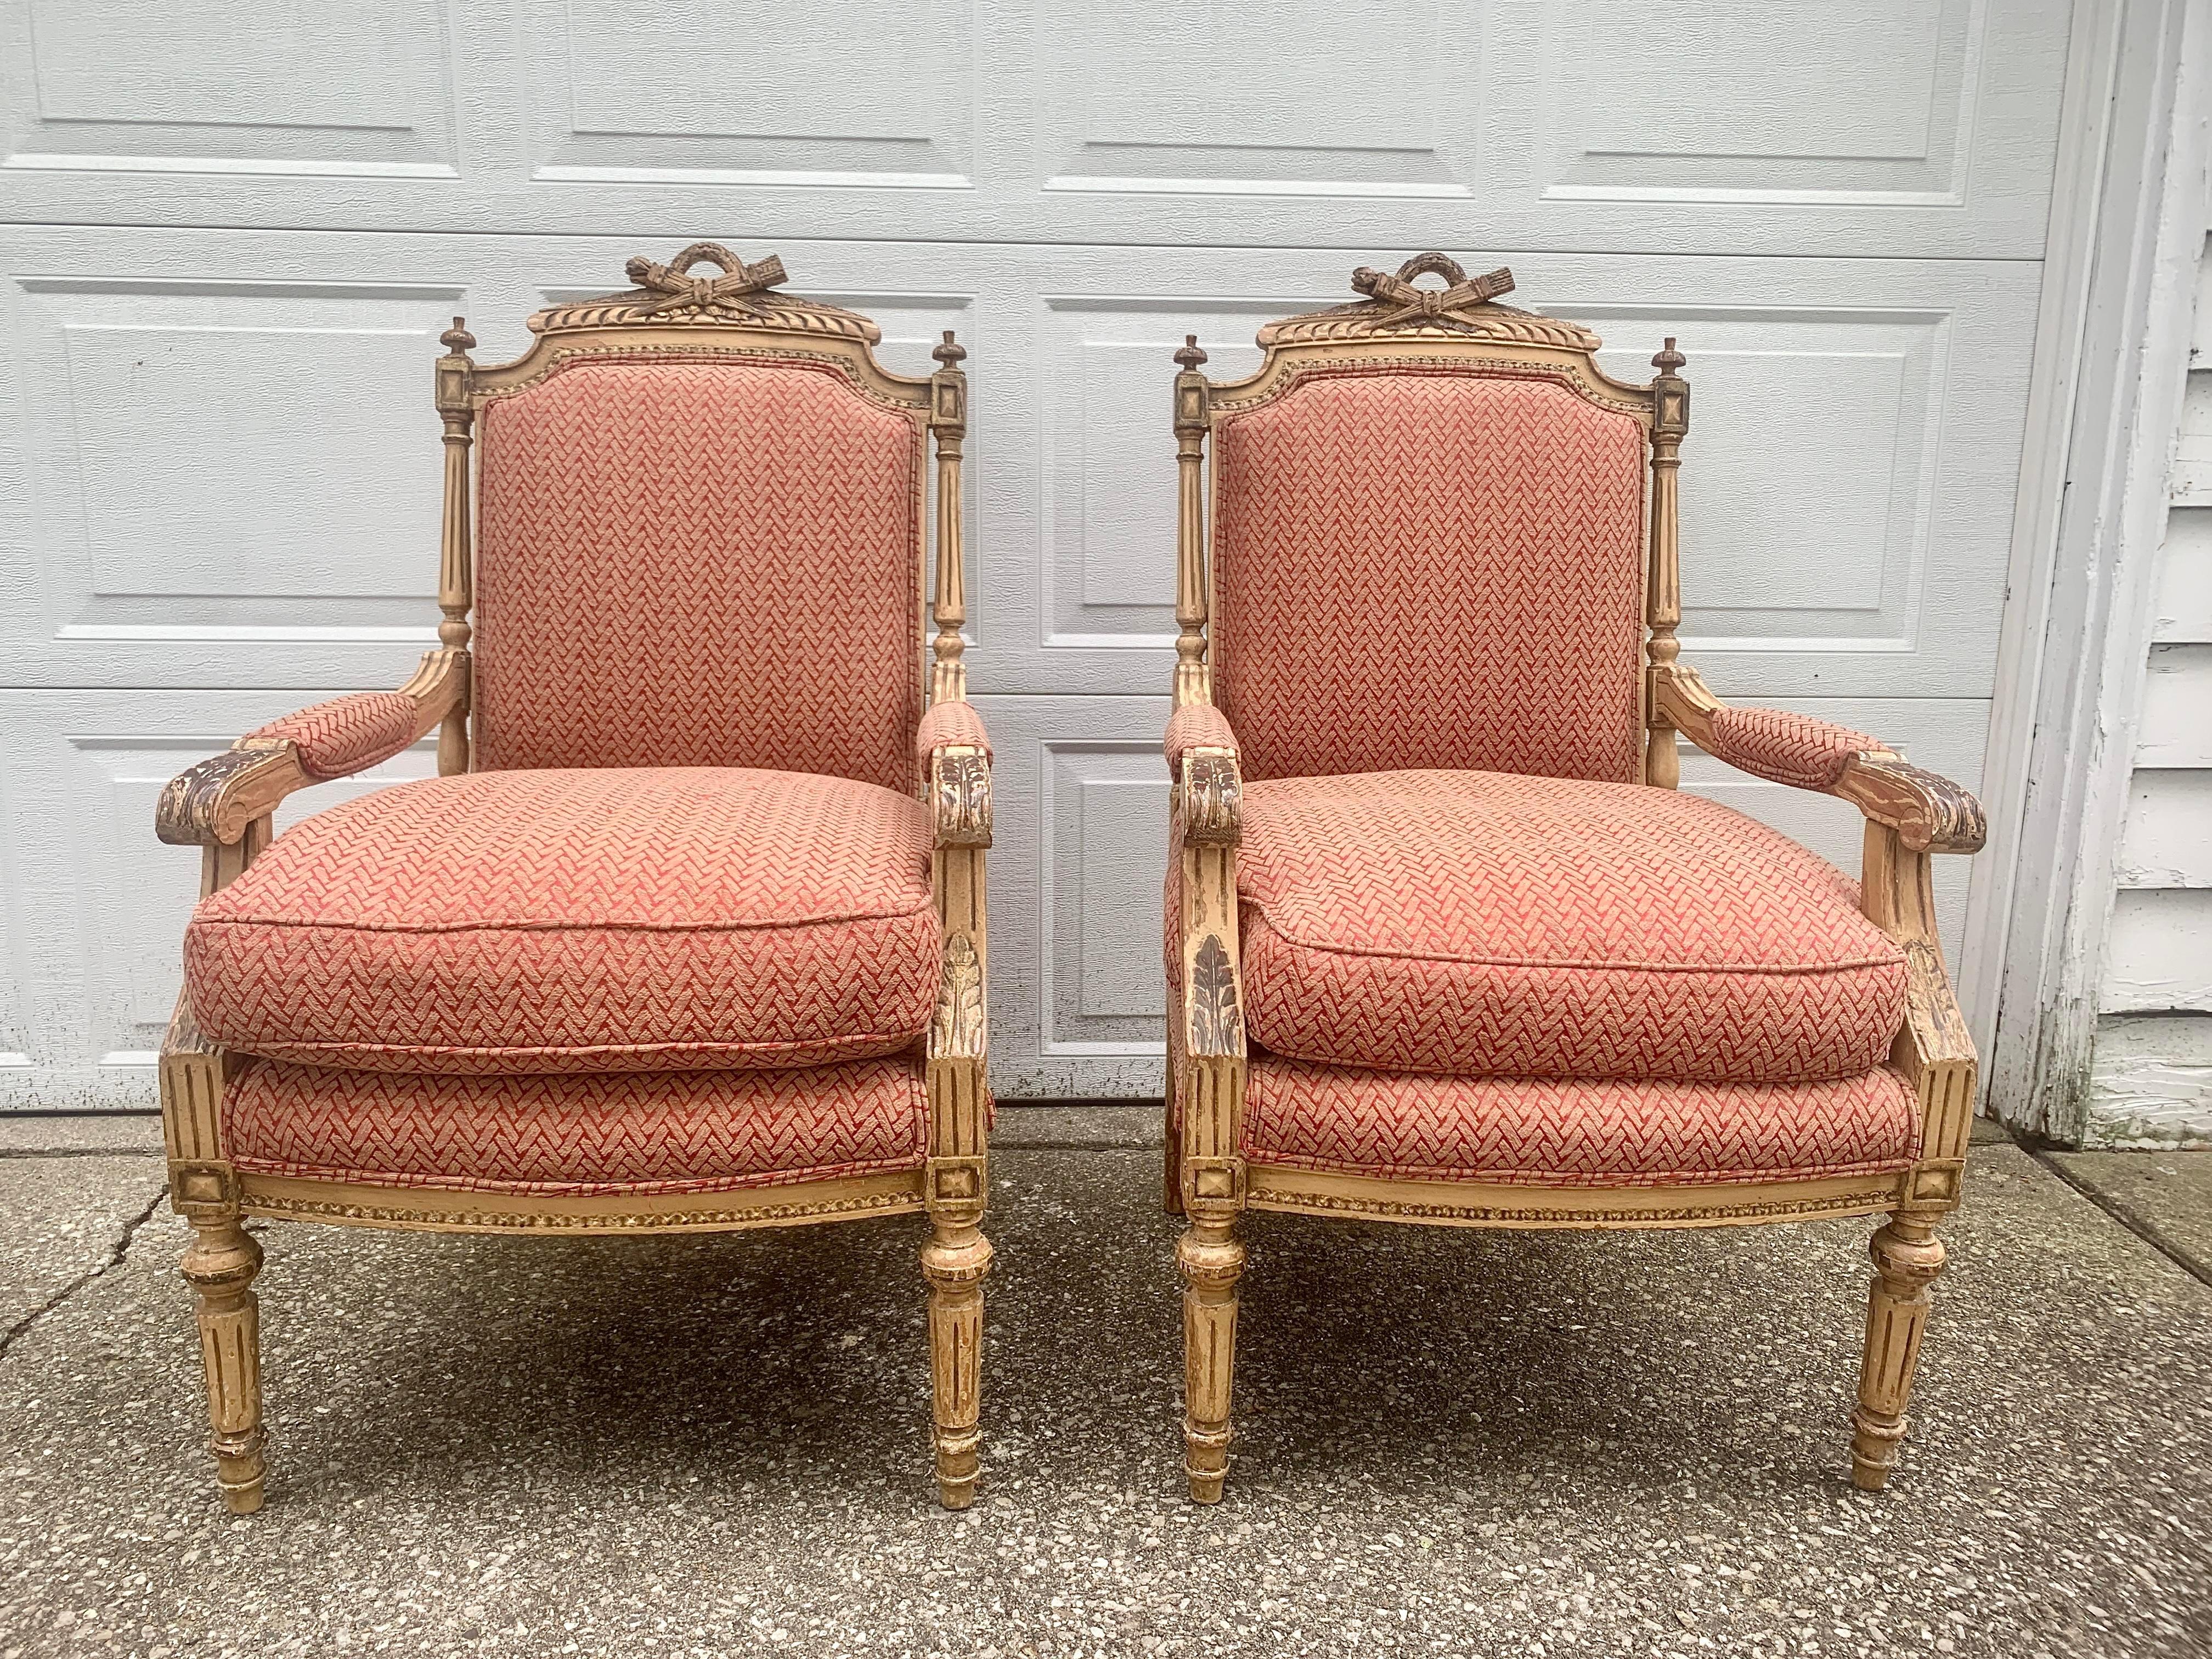 Ein atemberaubendes Paar Sessel im Louis-XVI-Stil 

Etwa Anfang des 20. Jahrhunderts

Gestell aus geschnitztem Holz, cremefarben lackiert und vergoldet, mit rosa und goldenen 